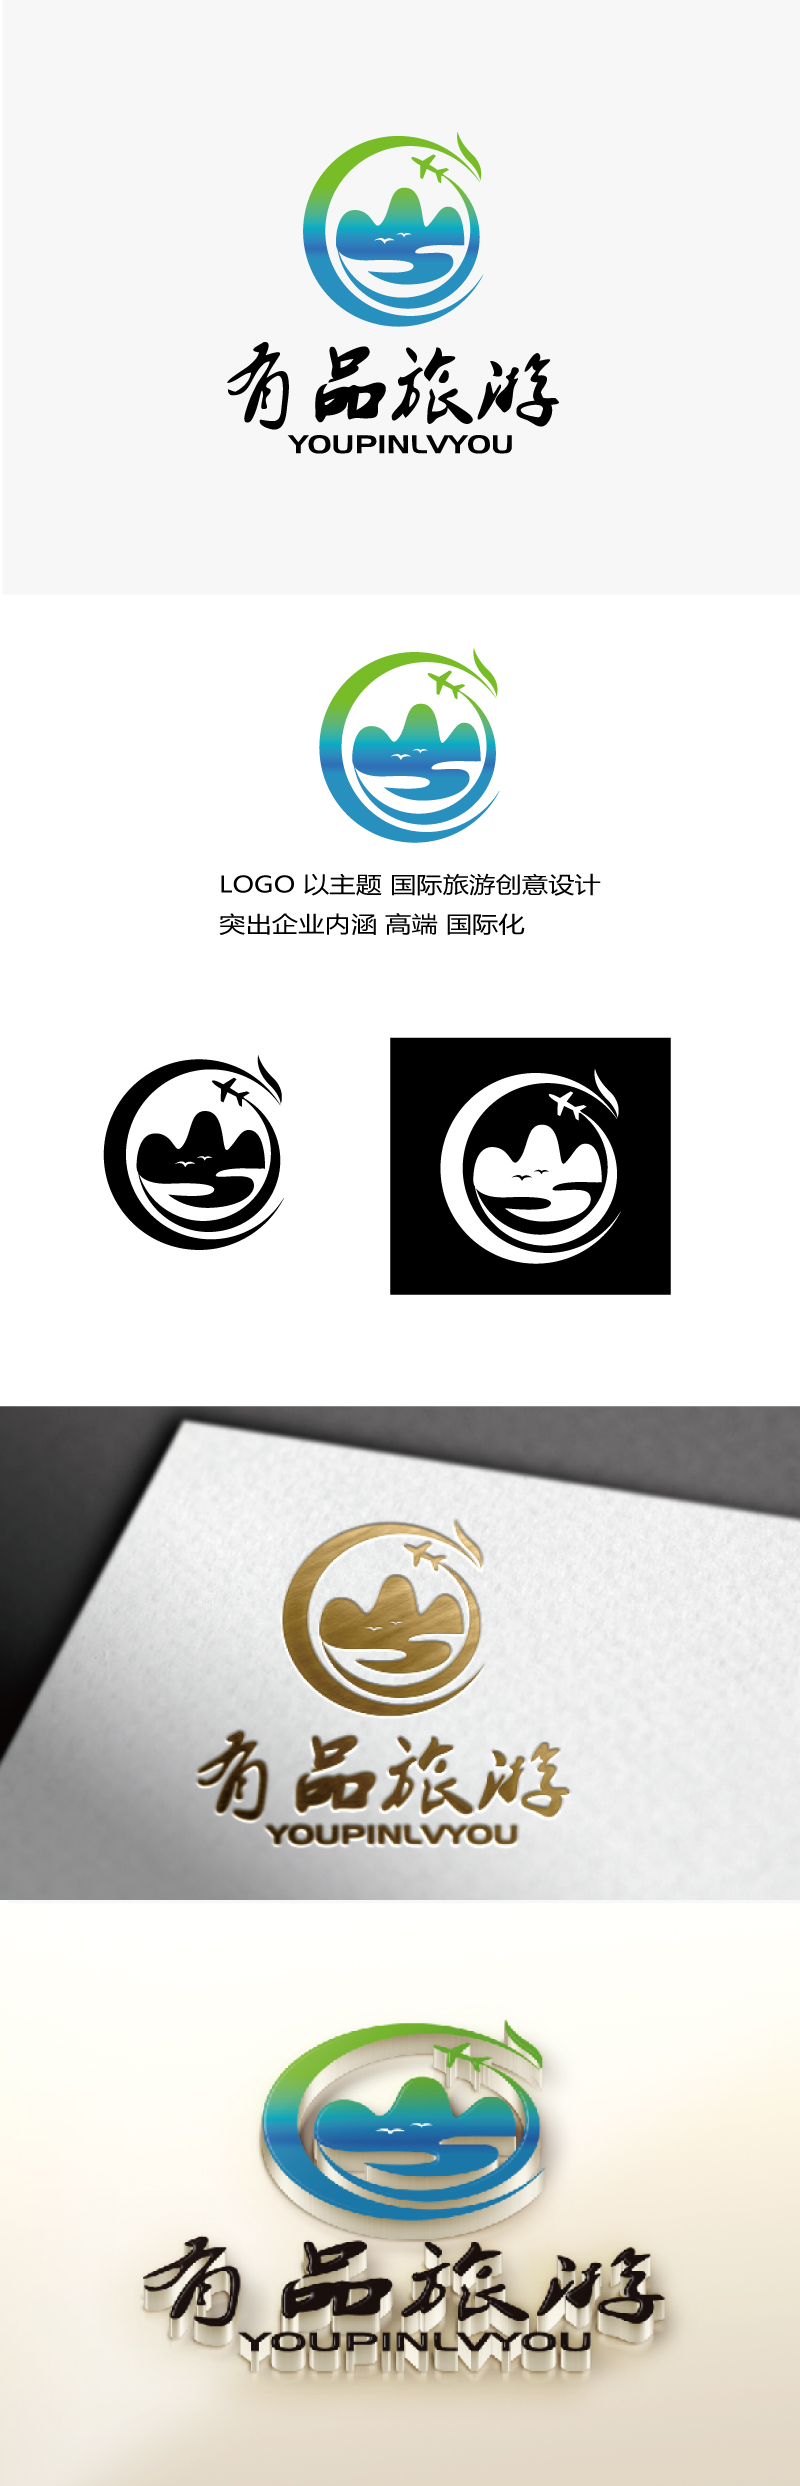 张俊的有品旅游logo设计